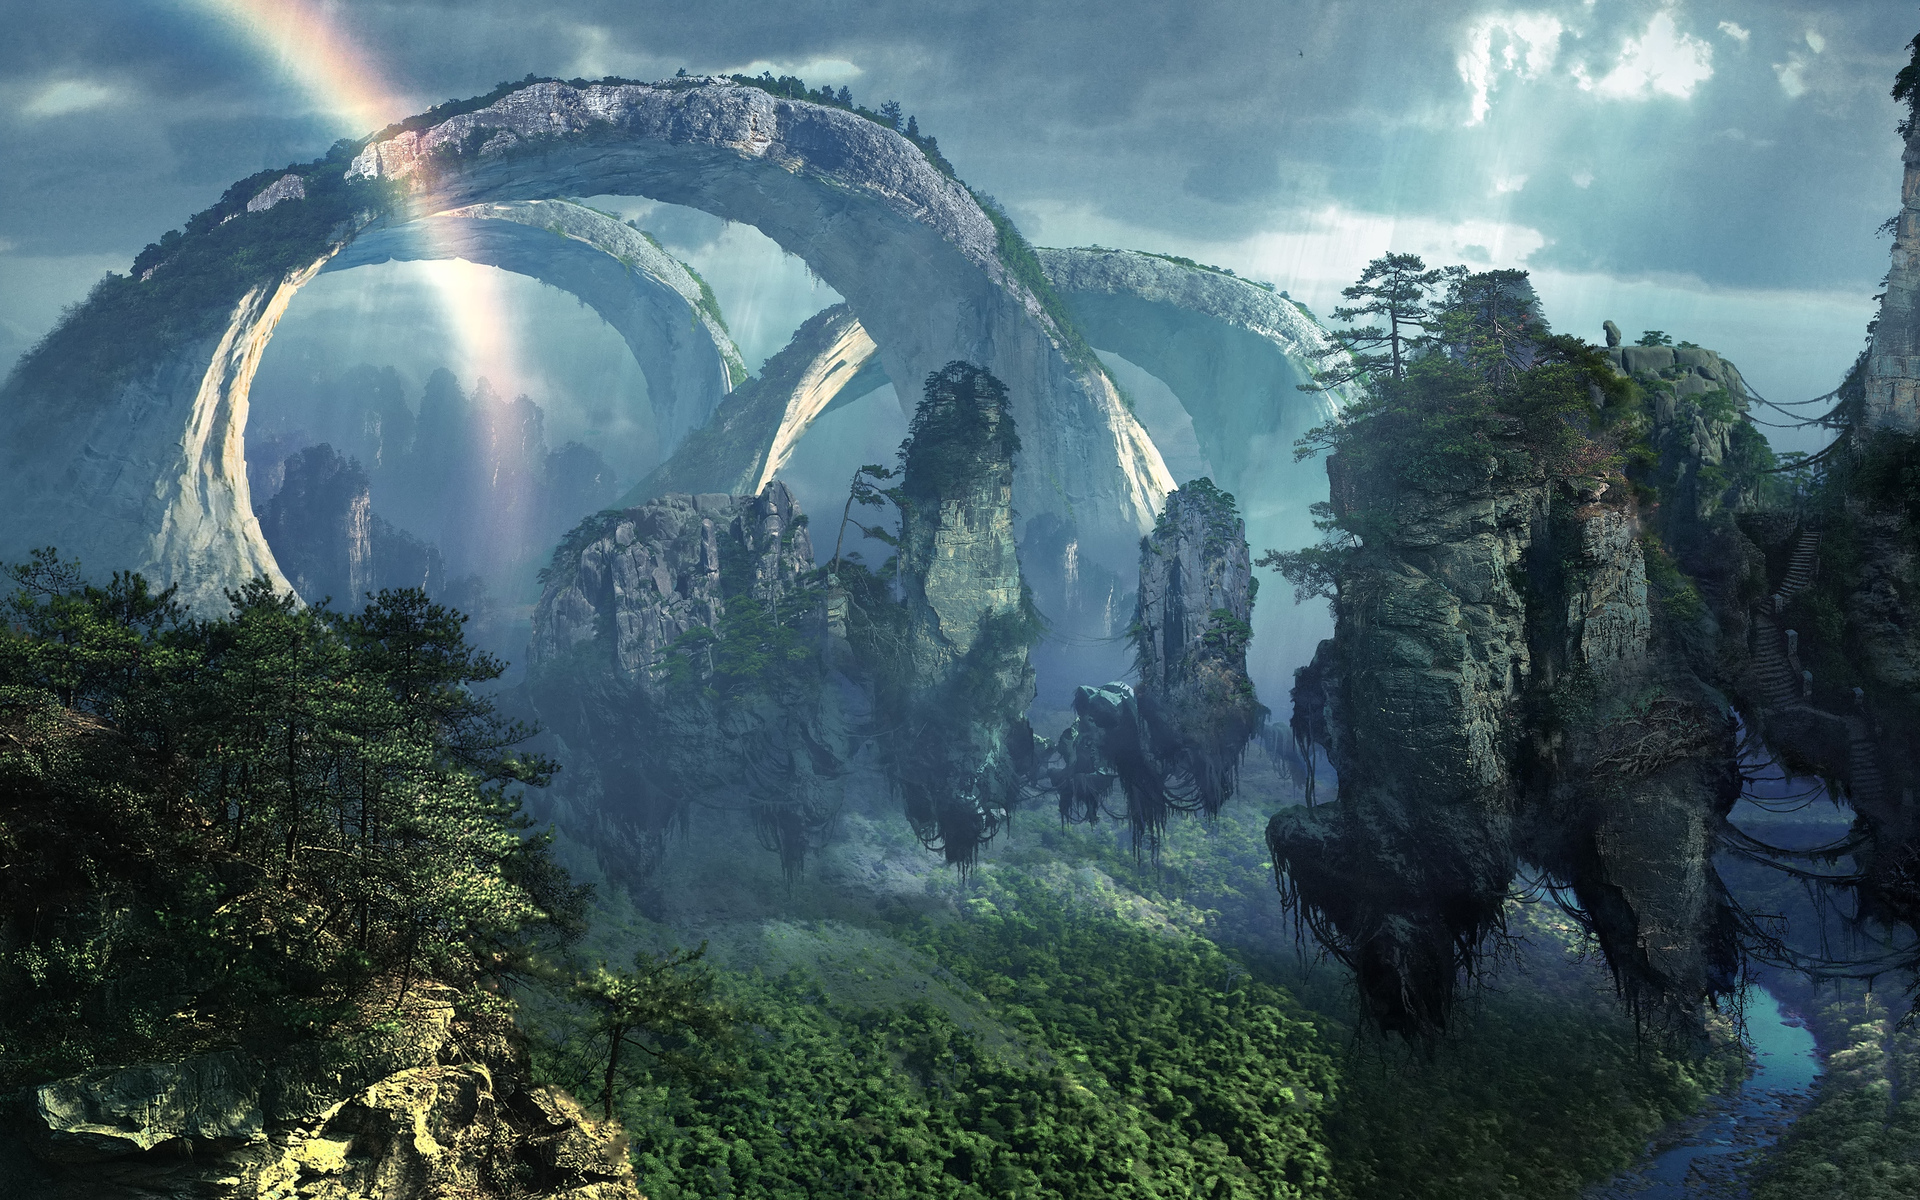 Fantasy-nature-art-magic-island-surreal-dream-wallpapers.jpg